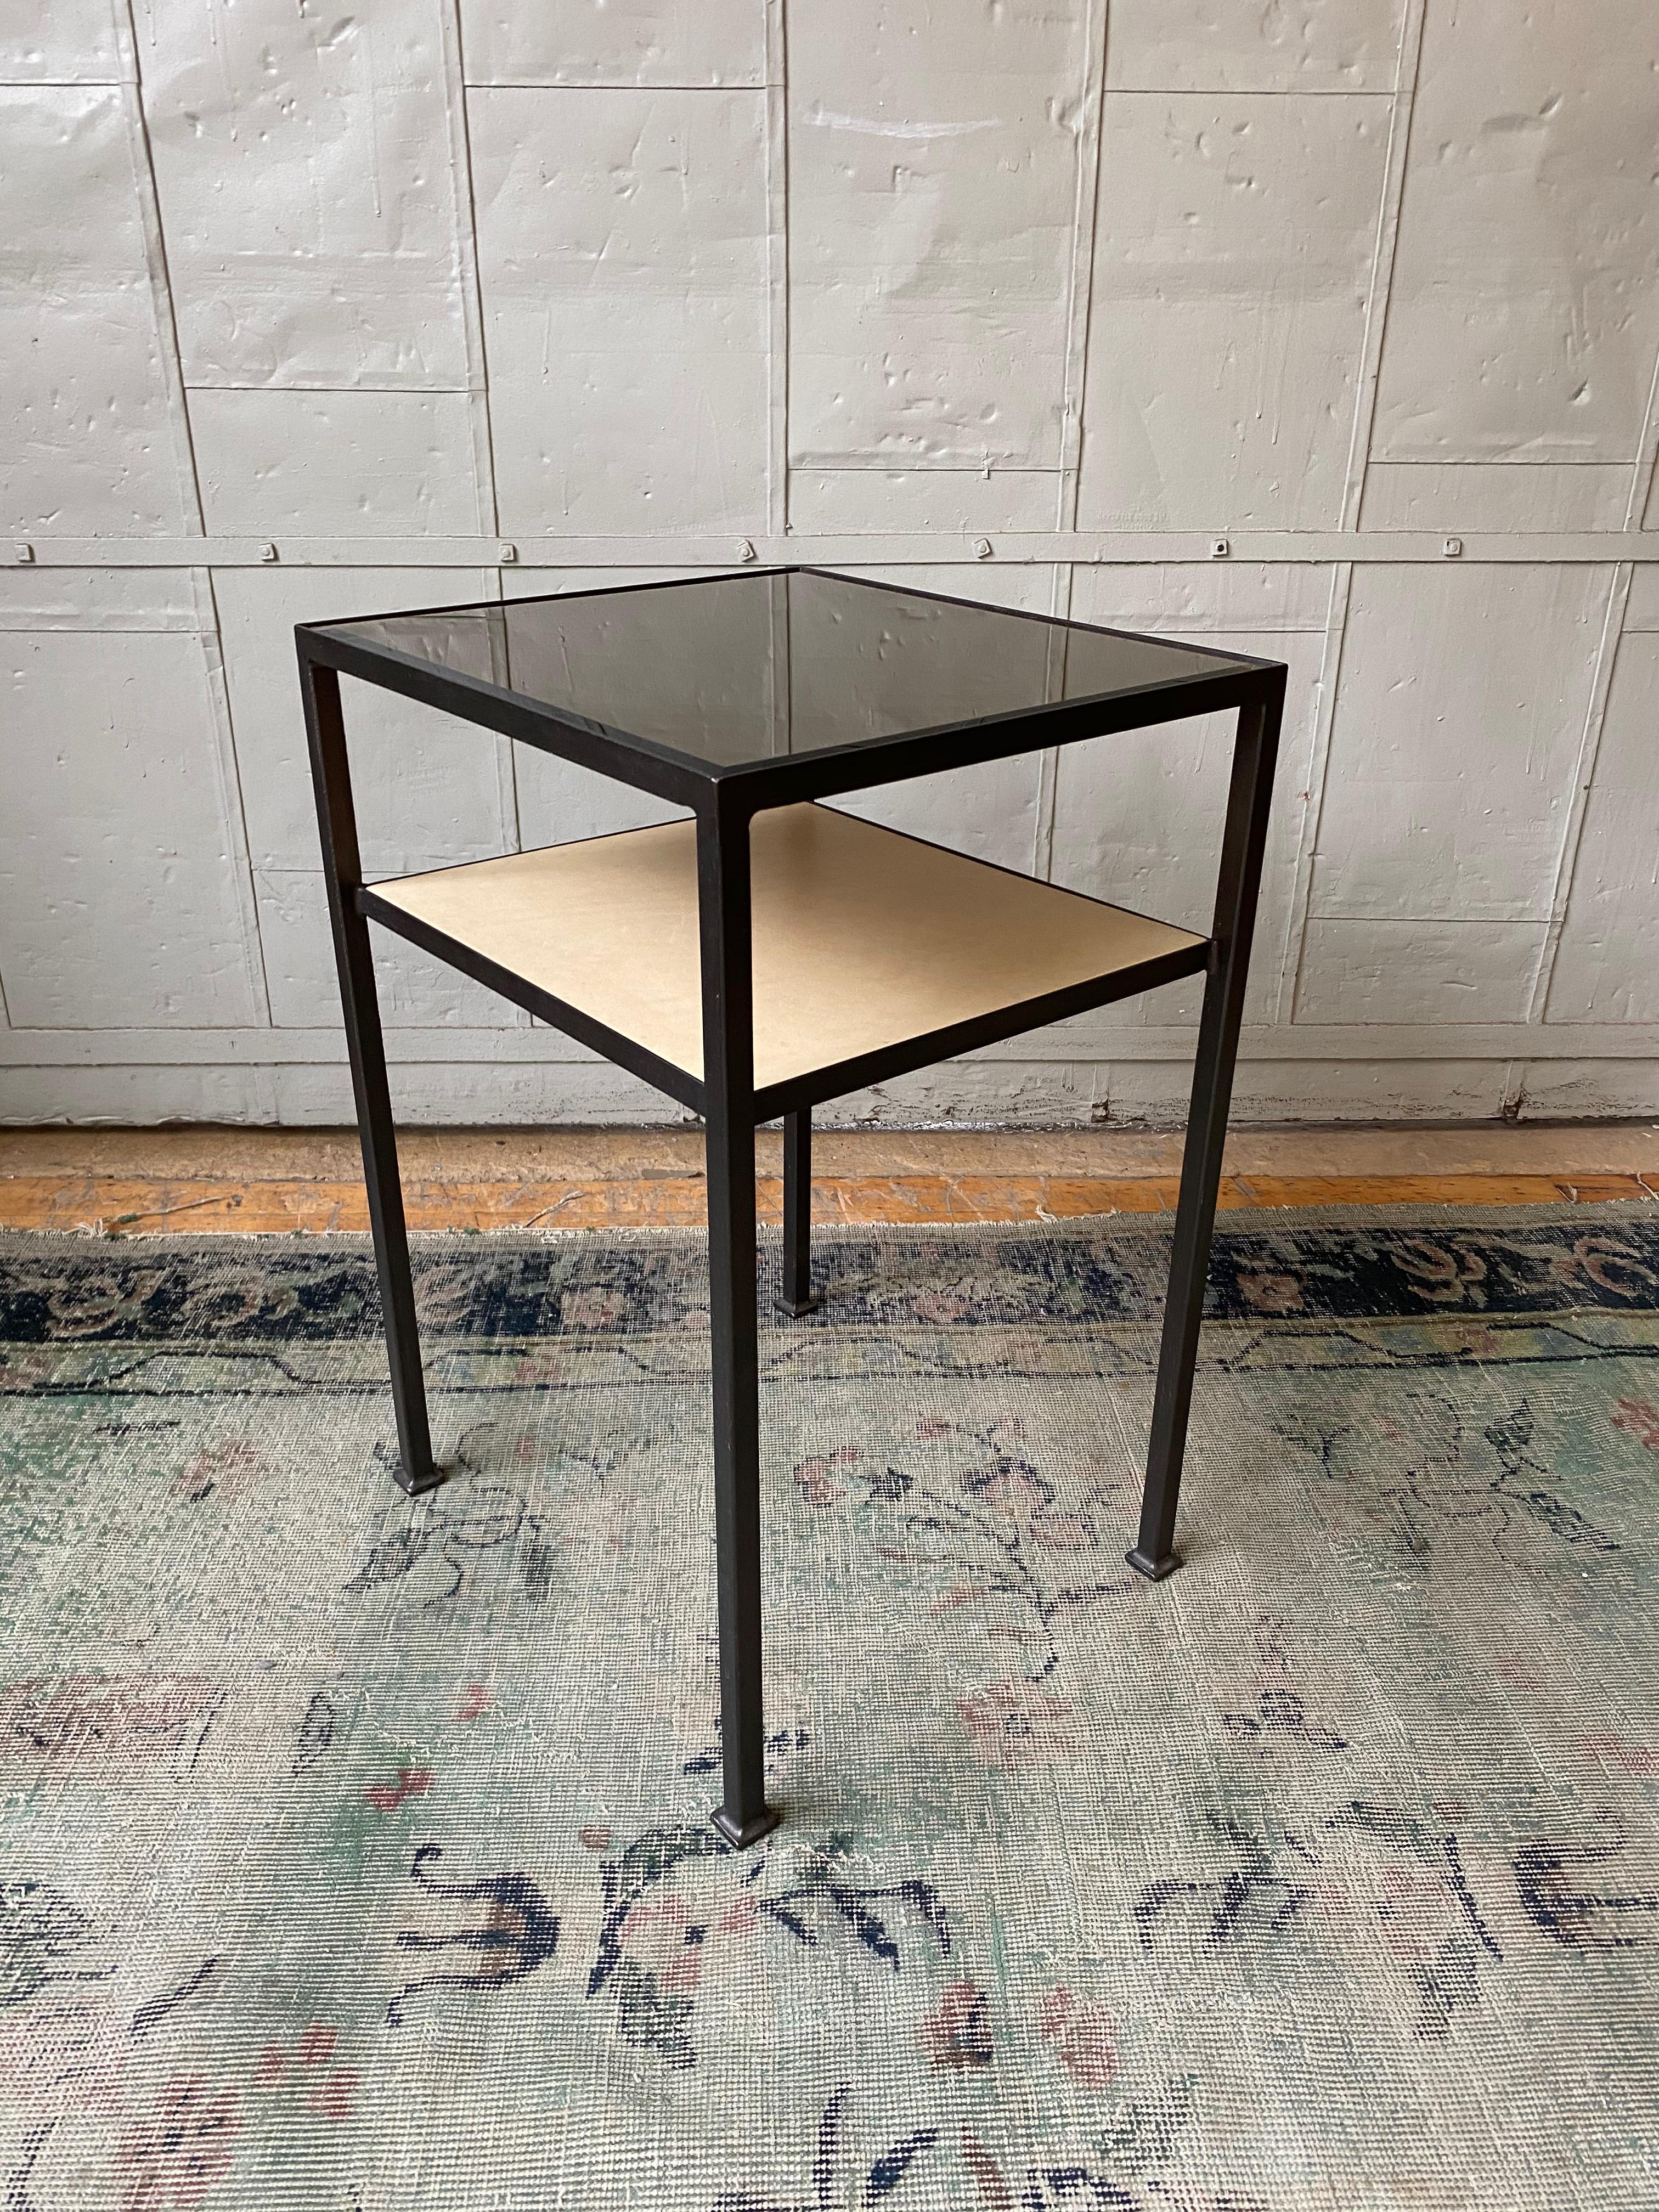 Cette table de nuit ou table d'appoint bien proportionnée présente un cadre en fer avec une finition bronze appliquée à la main, un plateau en verre transparent et une étagère inférieure recouverte de cuir. Il s'agit d'un échantillon de sol de notre